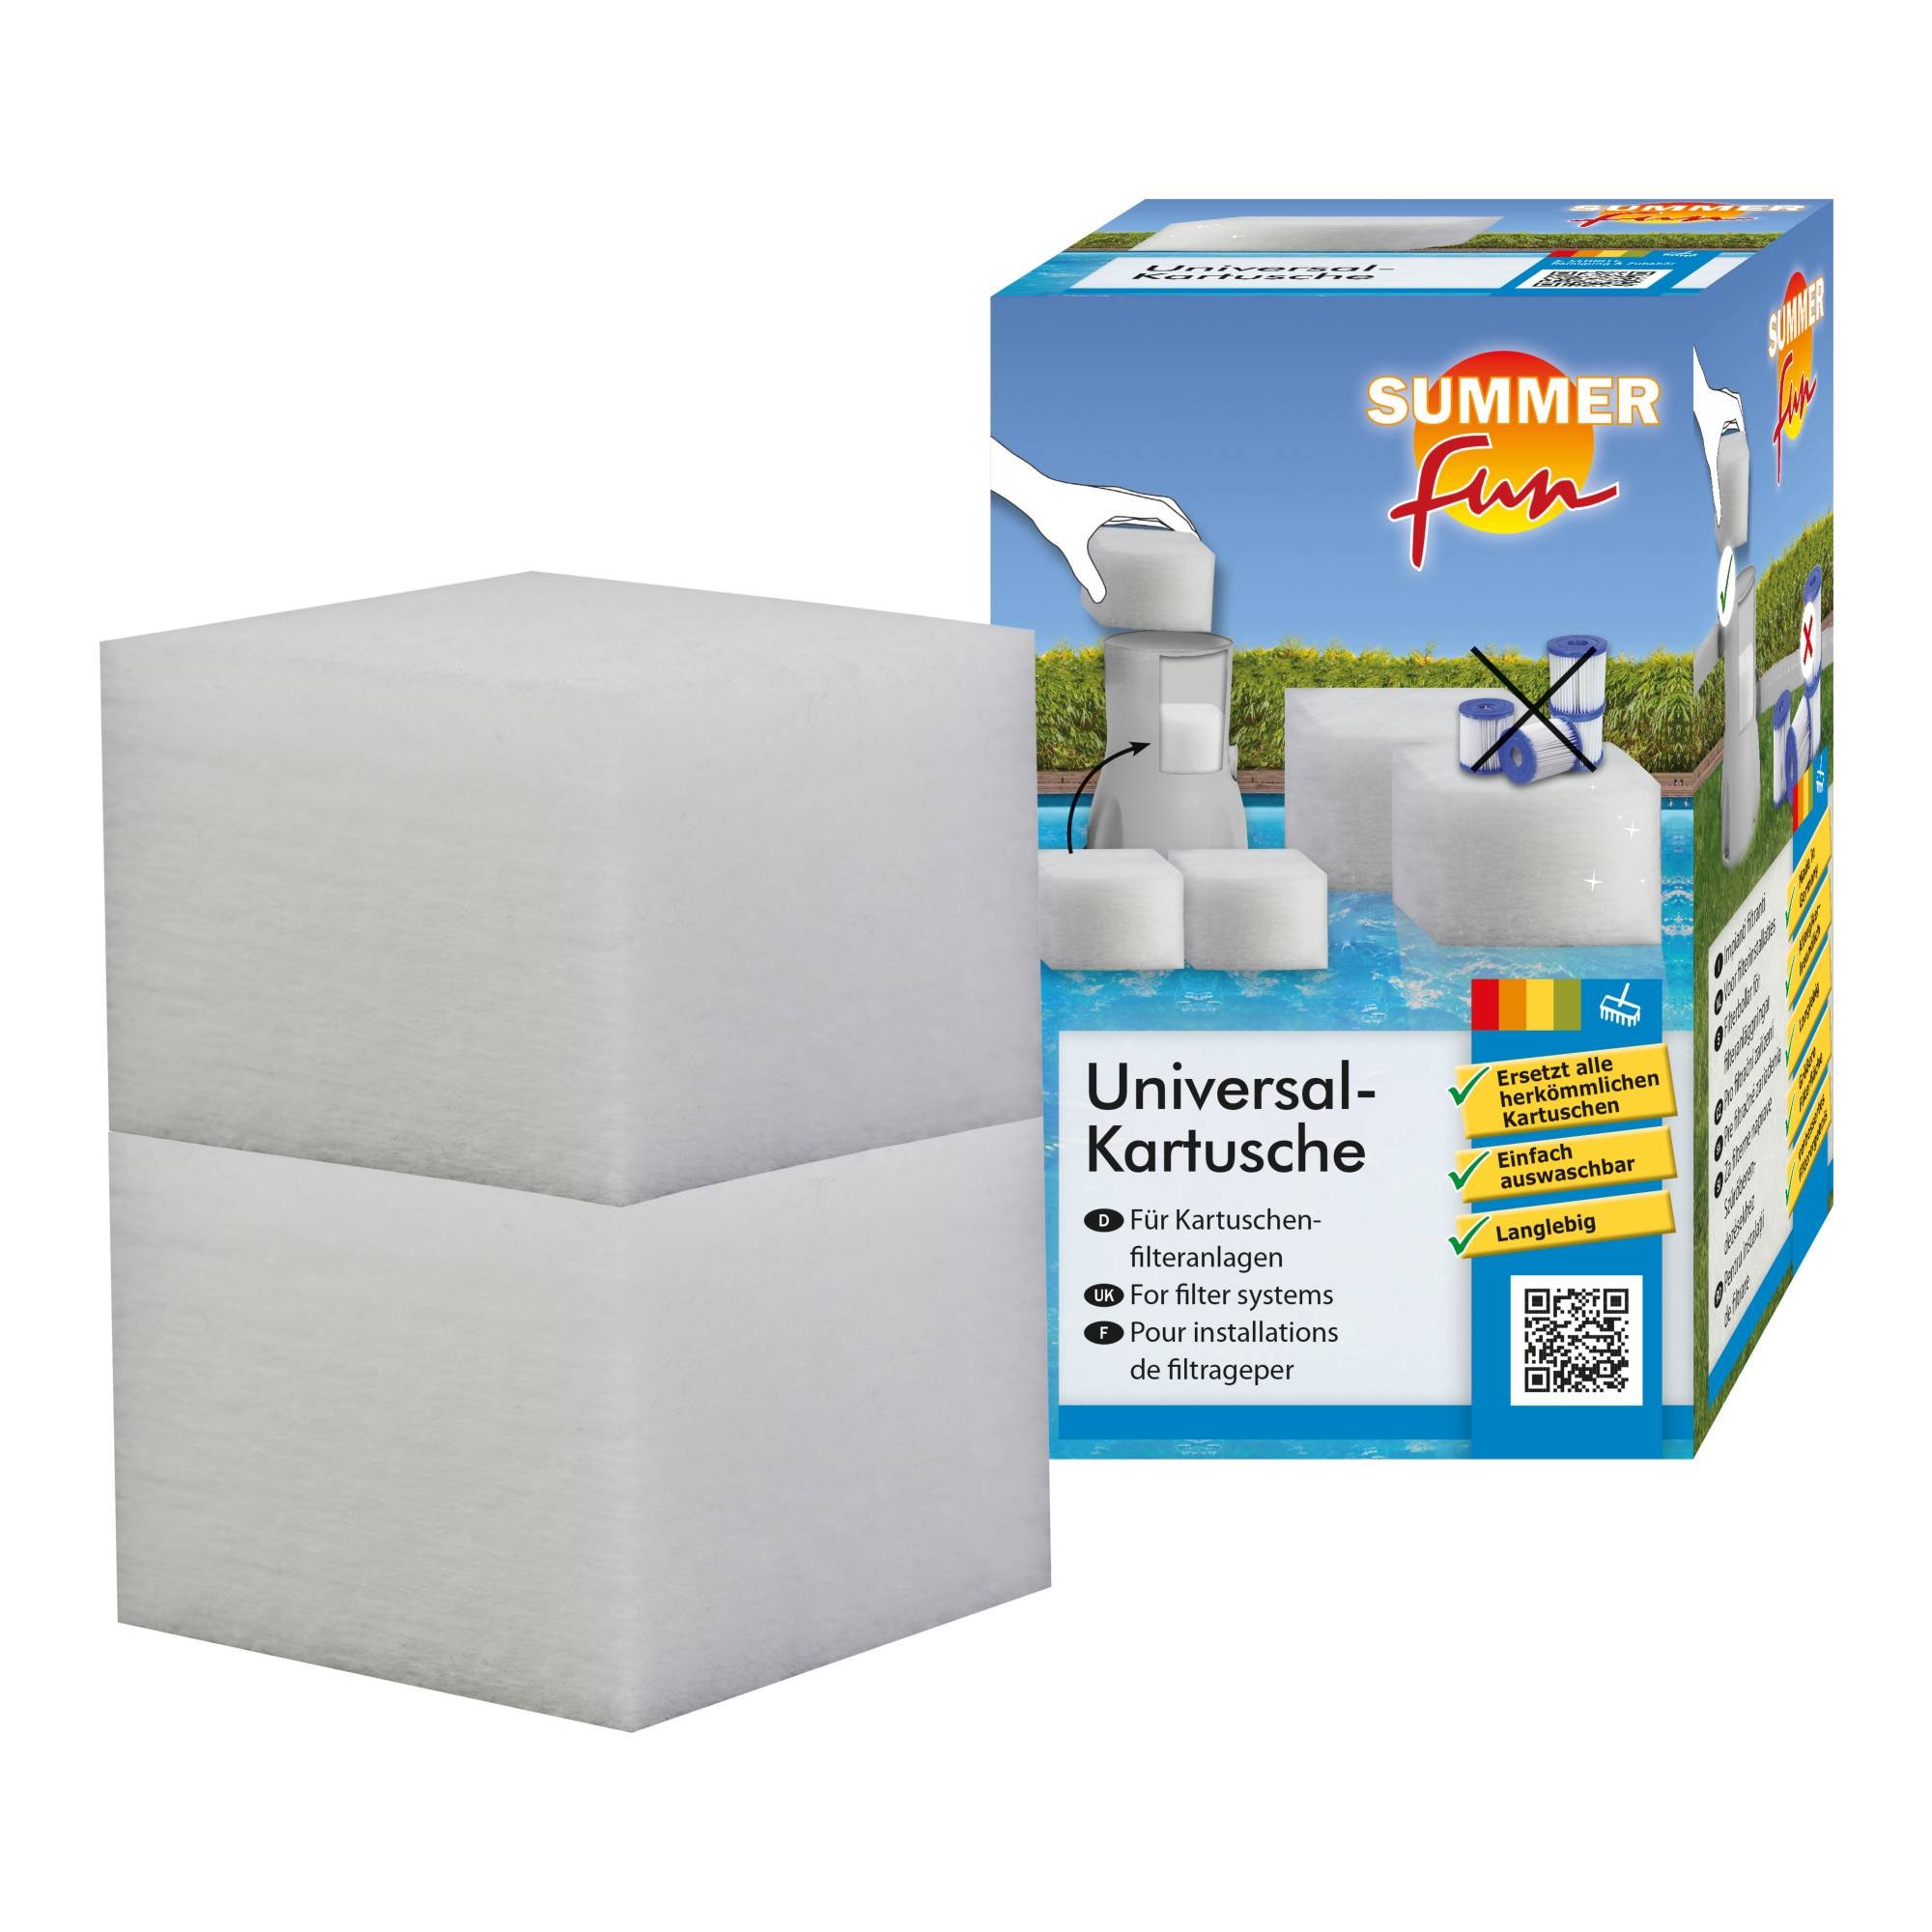 Summer Fun - Universal-Kartusche Cube (Doppel-Pack) für Kartuschenfilter